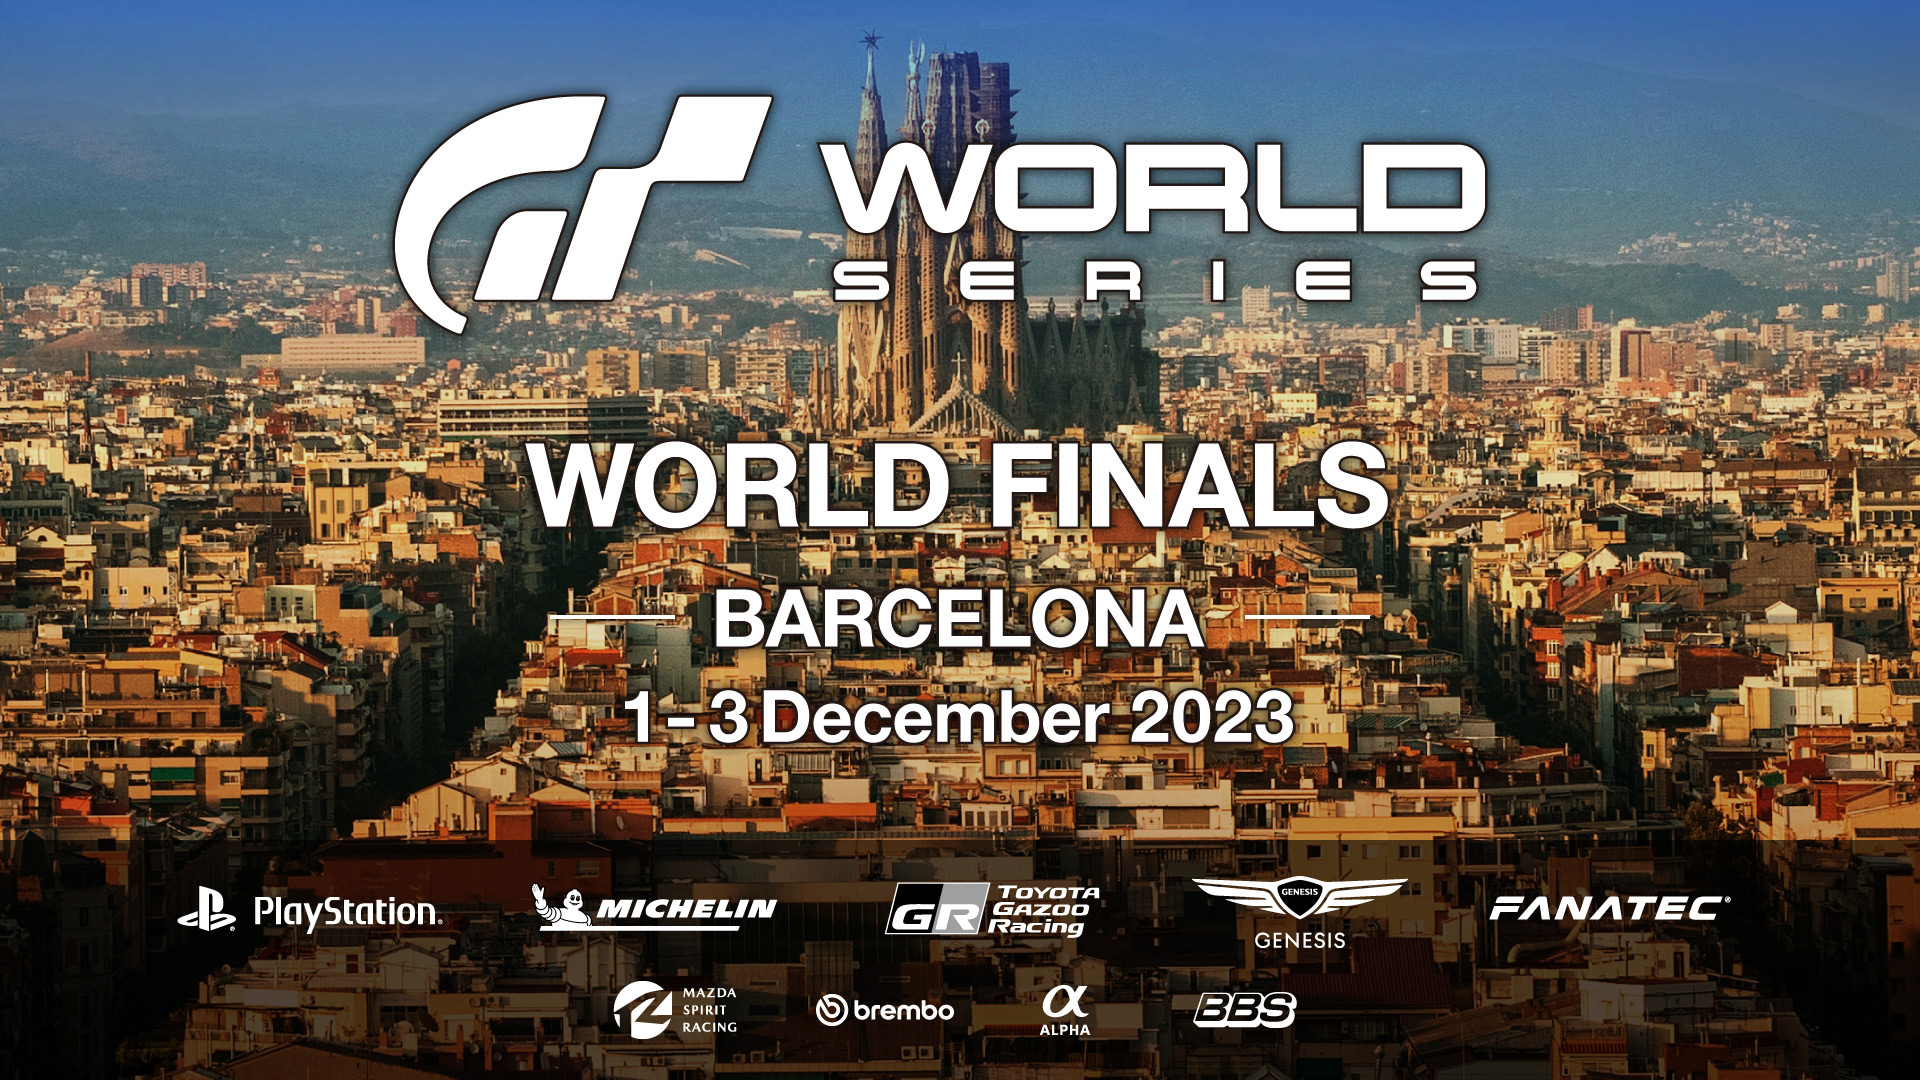 Es ist Zeit für das Große Finale! Das Weltfinale der Gran Turismo World Series 2023 beginnt am 1